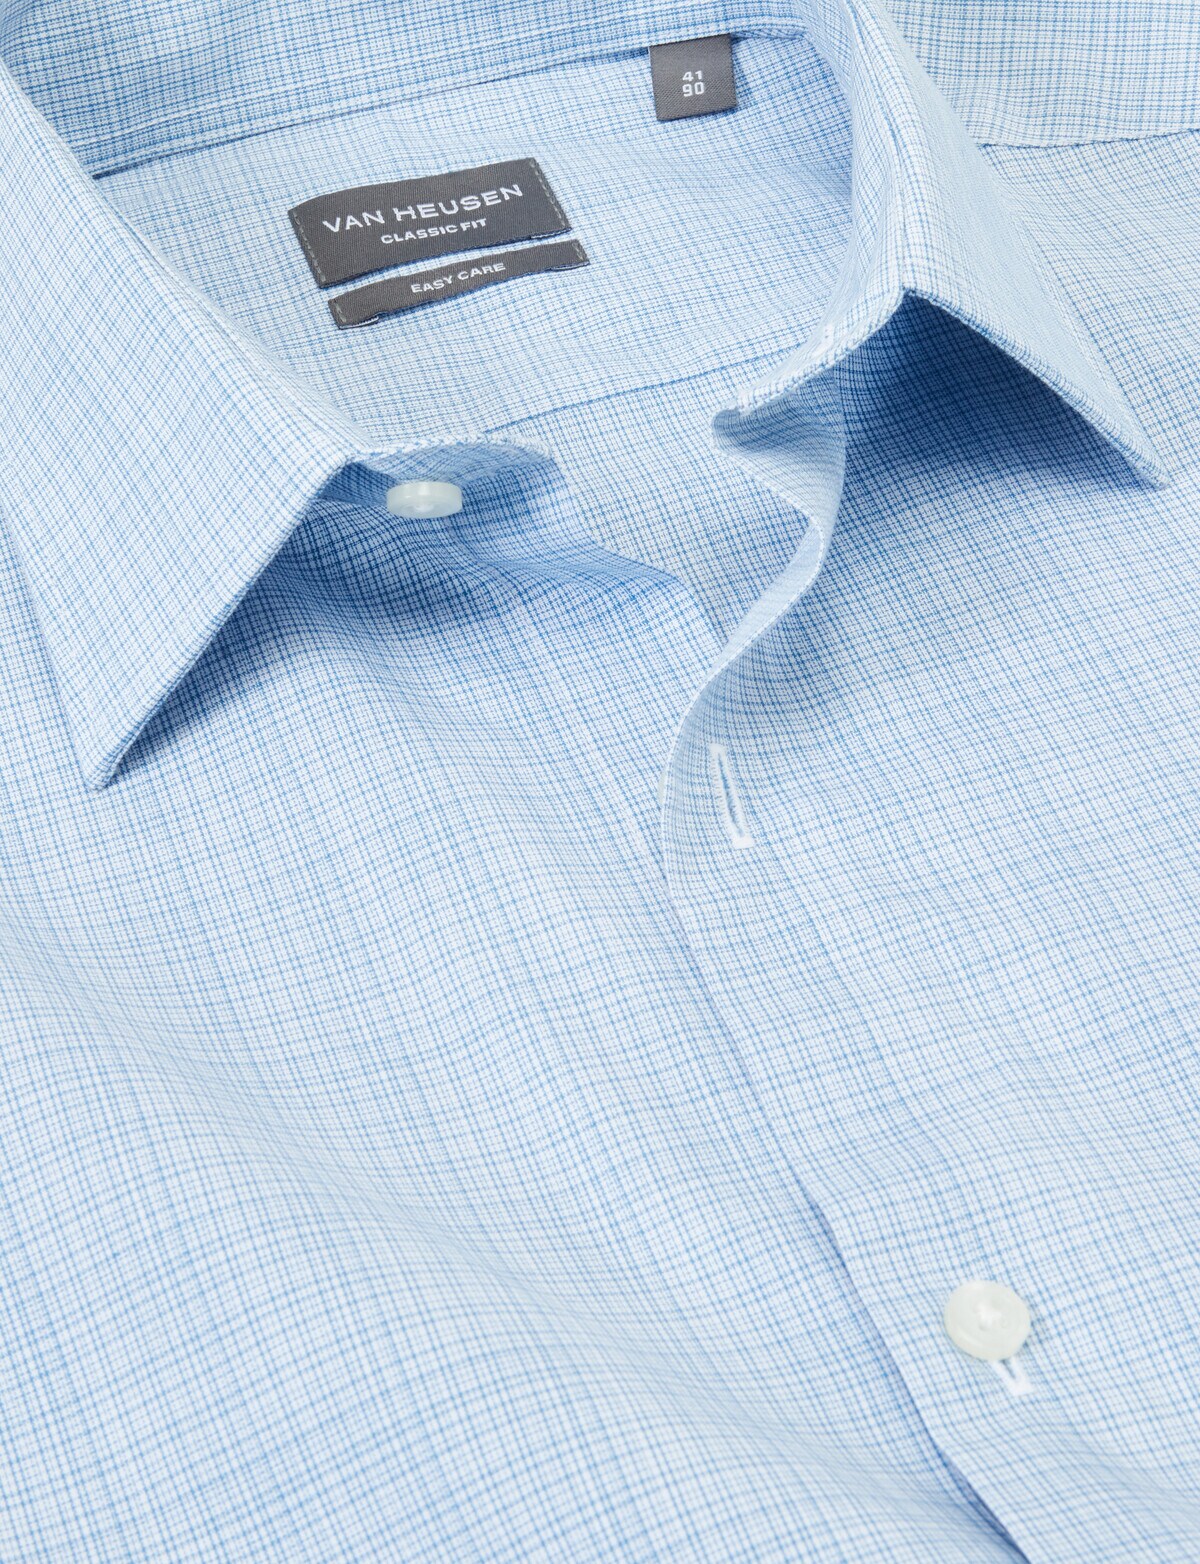 Van Heusen Micro Check Long Sleeve Classic Shirt, Blue - Formal Shirts